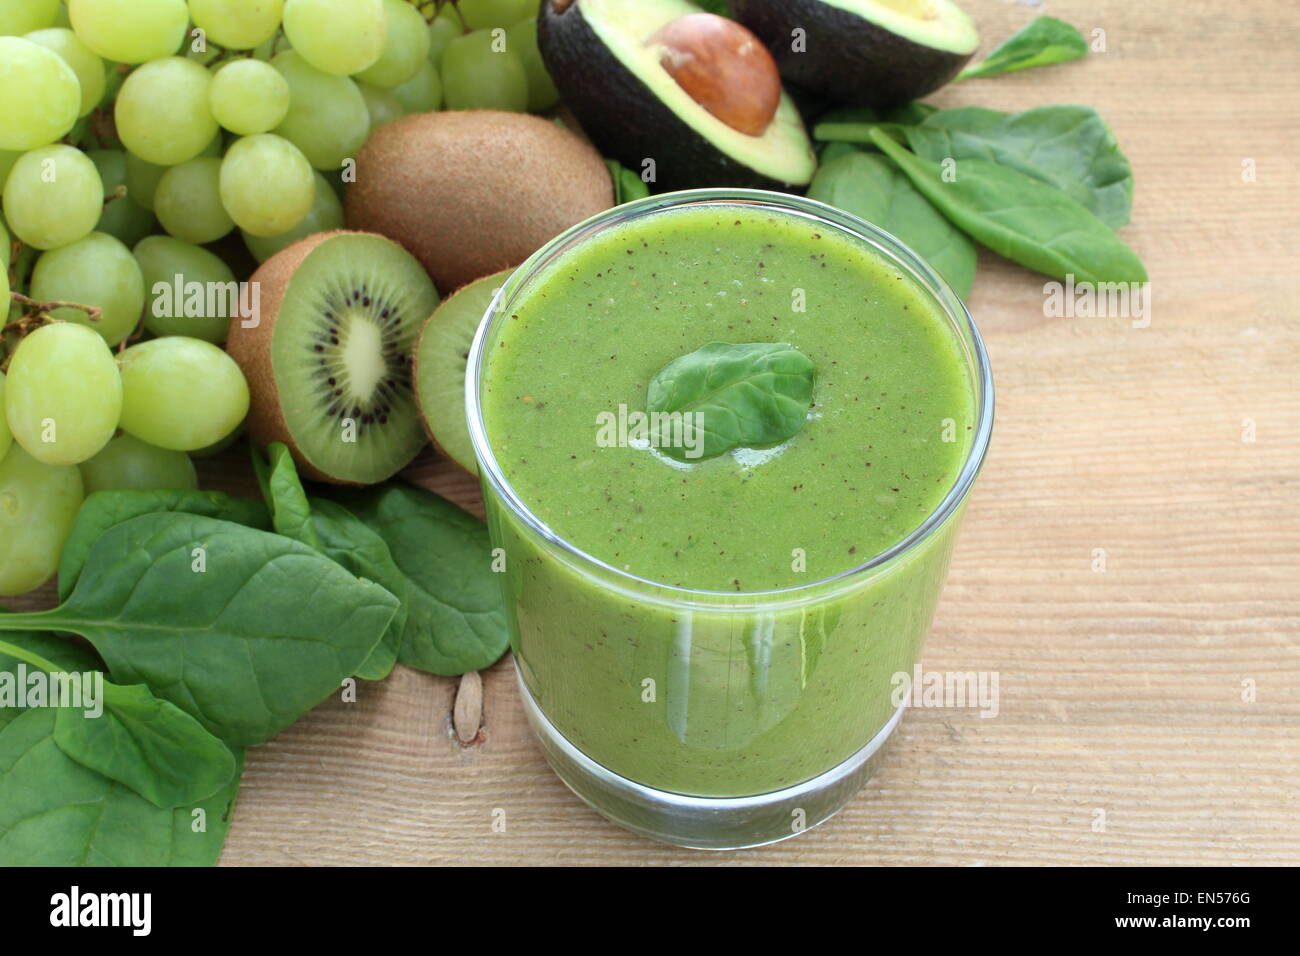 Smoothie verde ricos en fibra dietética : espinacas, uvas, kiwi y aguacate. Foto de stock